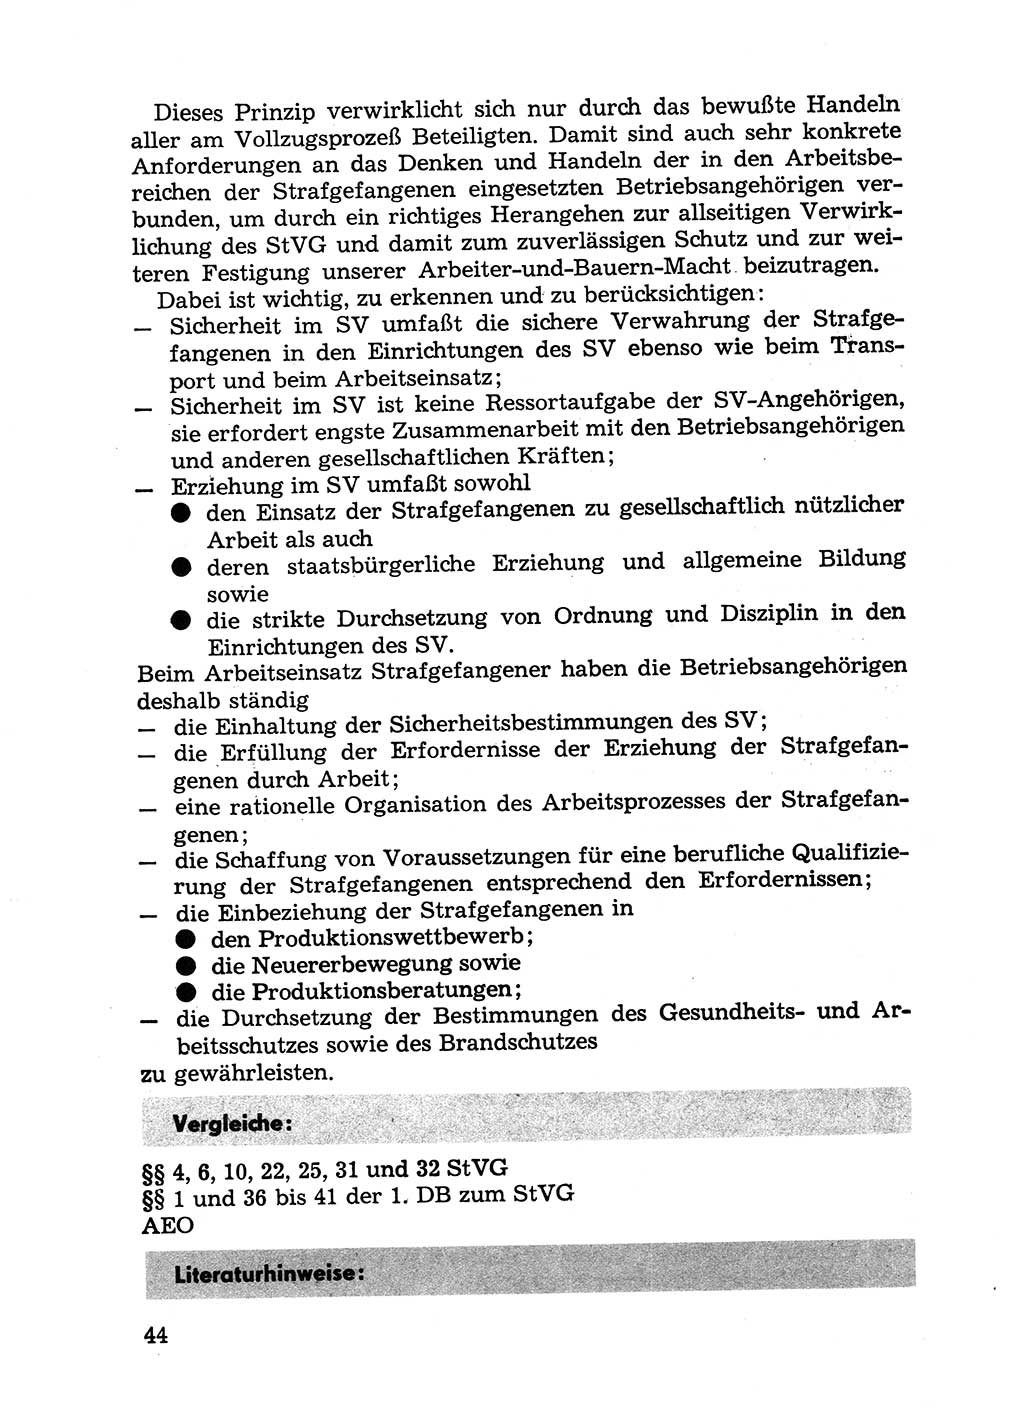 Handbuch für Betriebsangehörige, Abteilung Strafvollzug (SV) [Ministerium des Innern (MdI) Deutsche Demokratische Republik (DDR)] 1981, Seite 44 (Hb. BA Abt. SV MdI DDR 1981, S. 44)